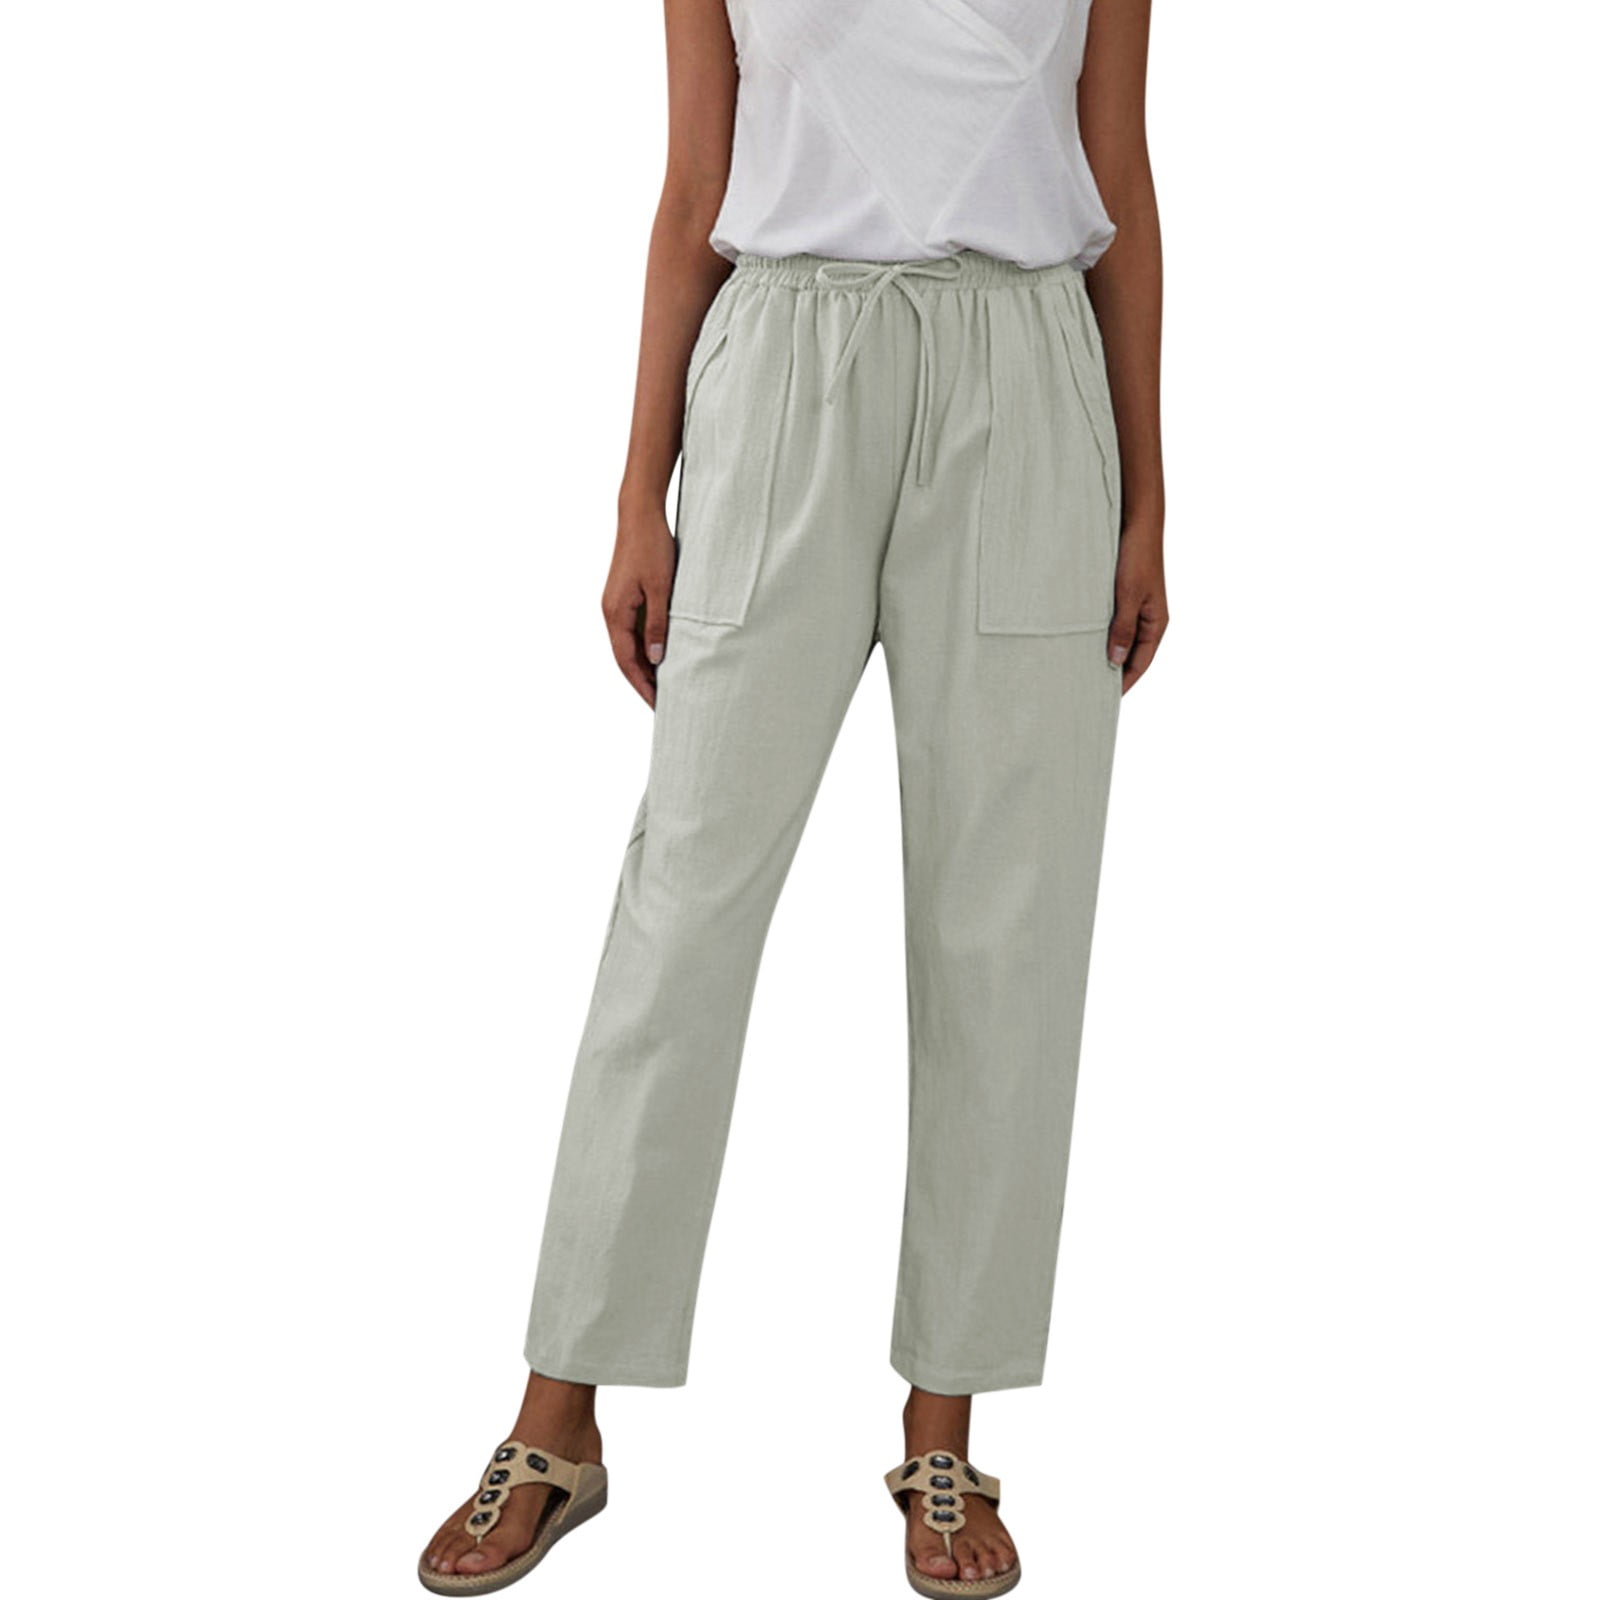 2DXuixsh Petite Sweatpants for Women Women Solid Color Large Pocket ...